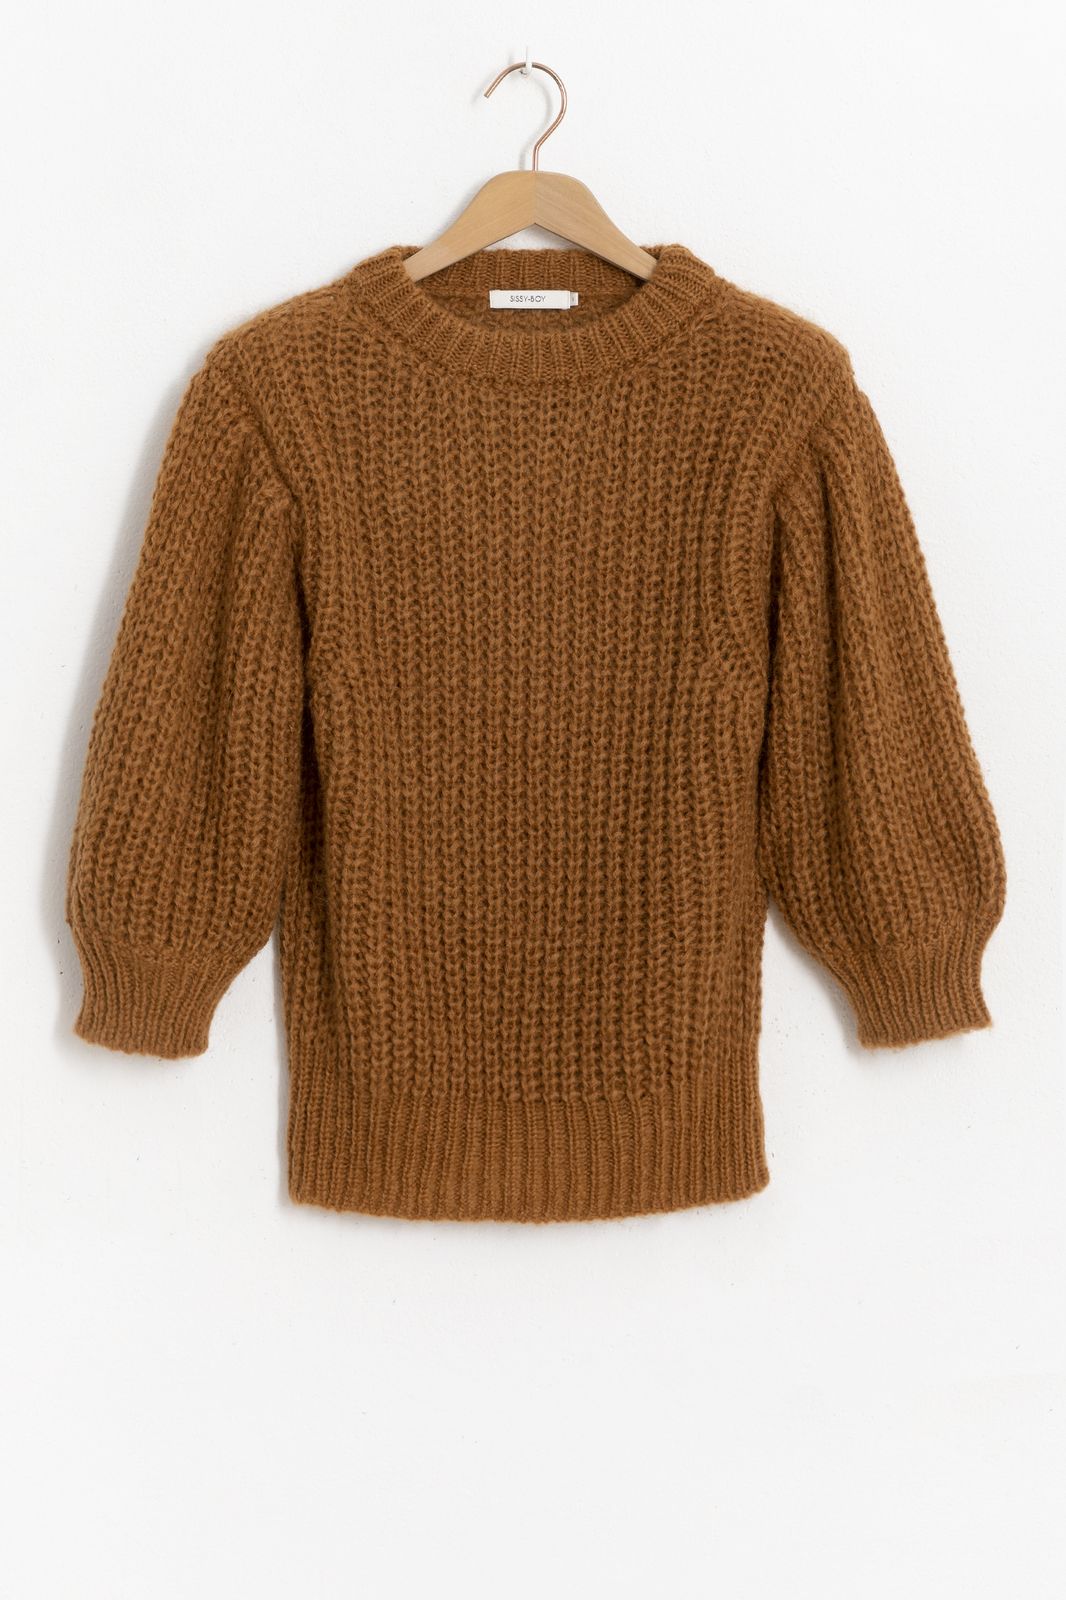 Bruine knit sweater met pofmouwen - Dames | Sissy-Boy